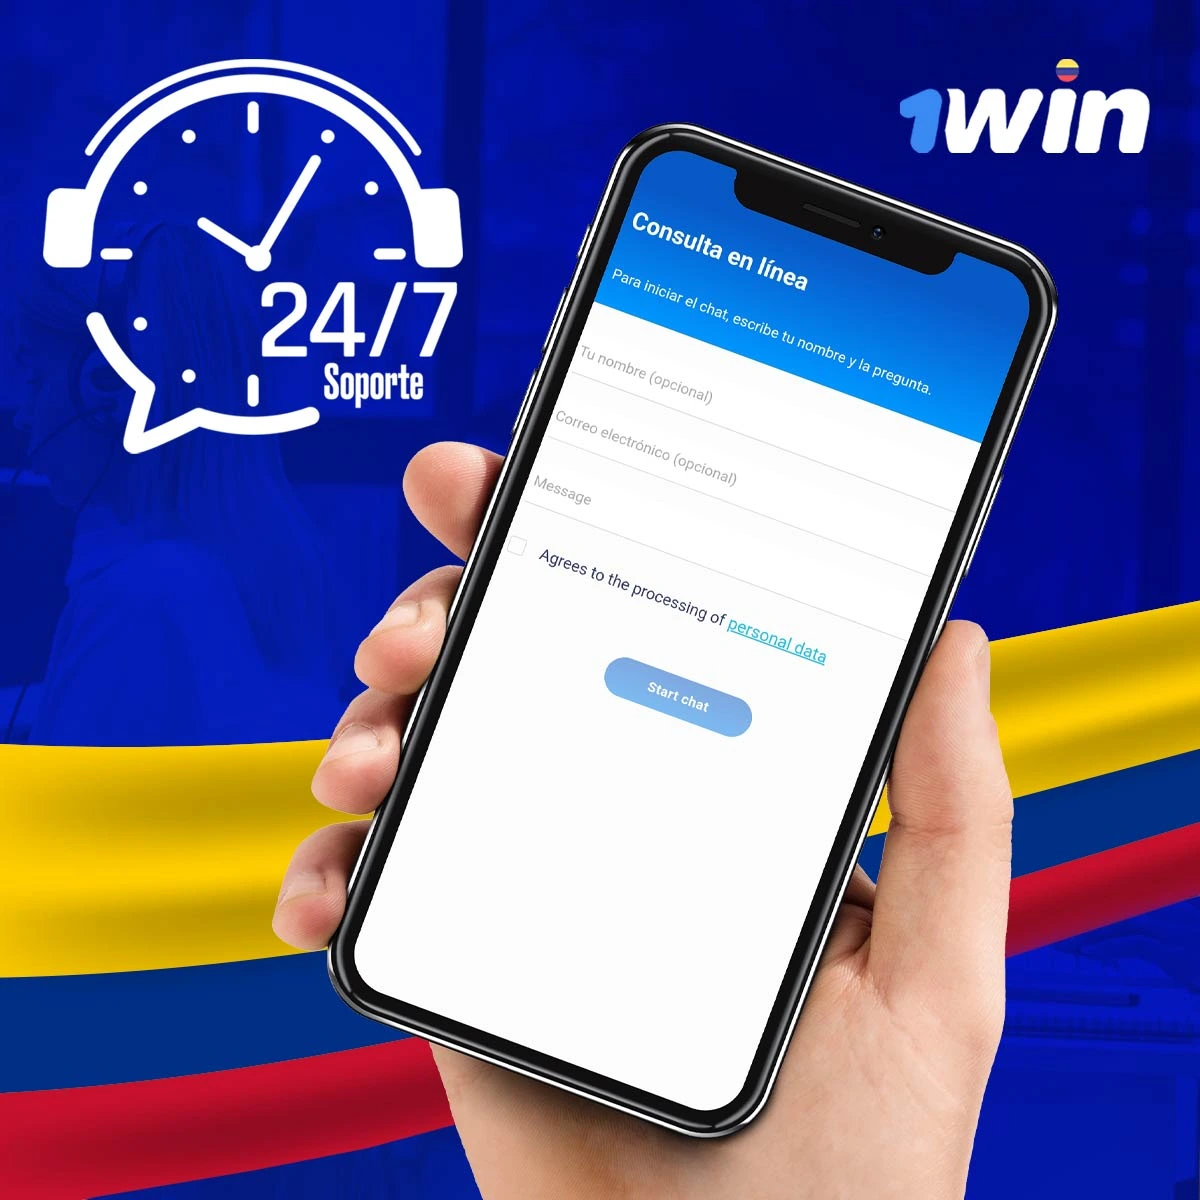 El equipo de soporte de 1win Colombia está disponible las 24 horas del día, los 7 días de la semana